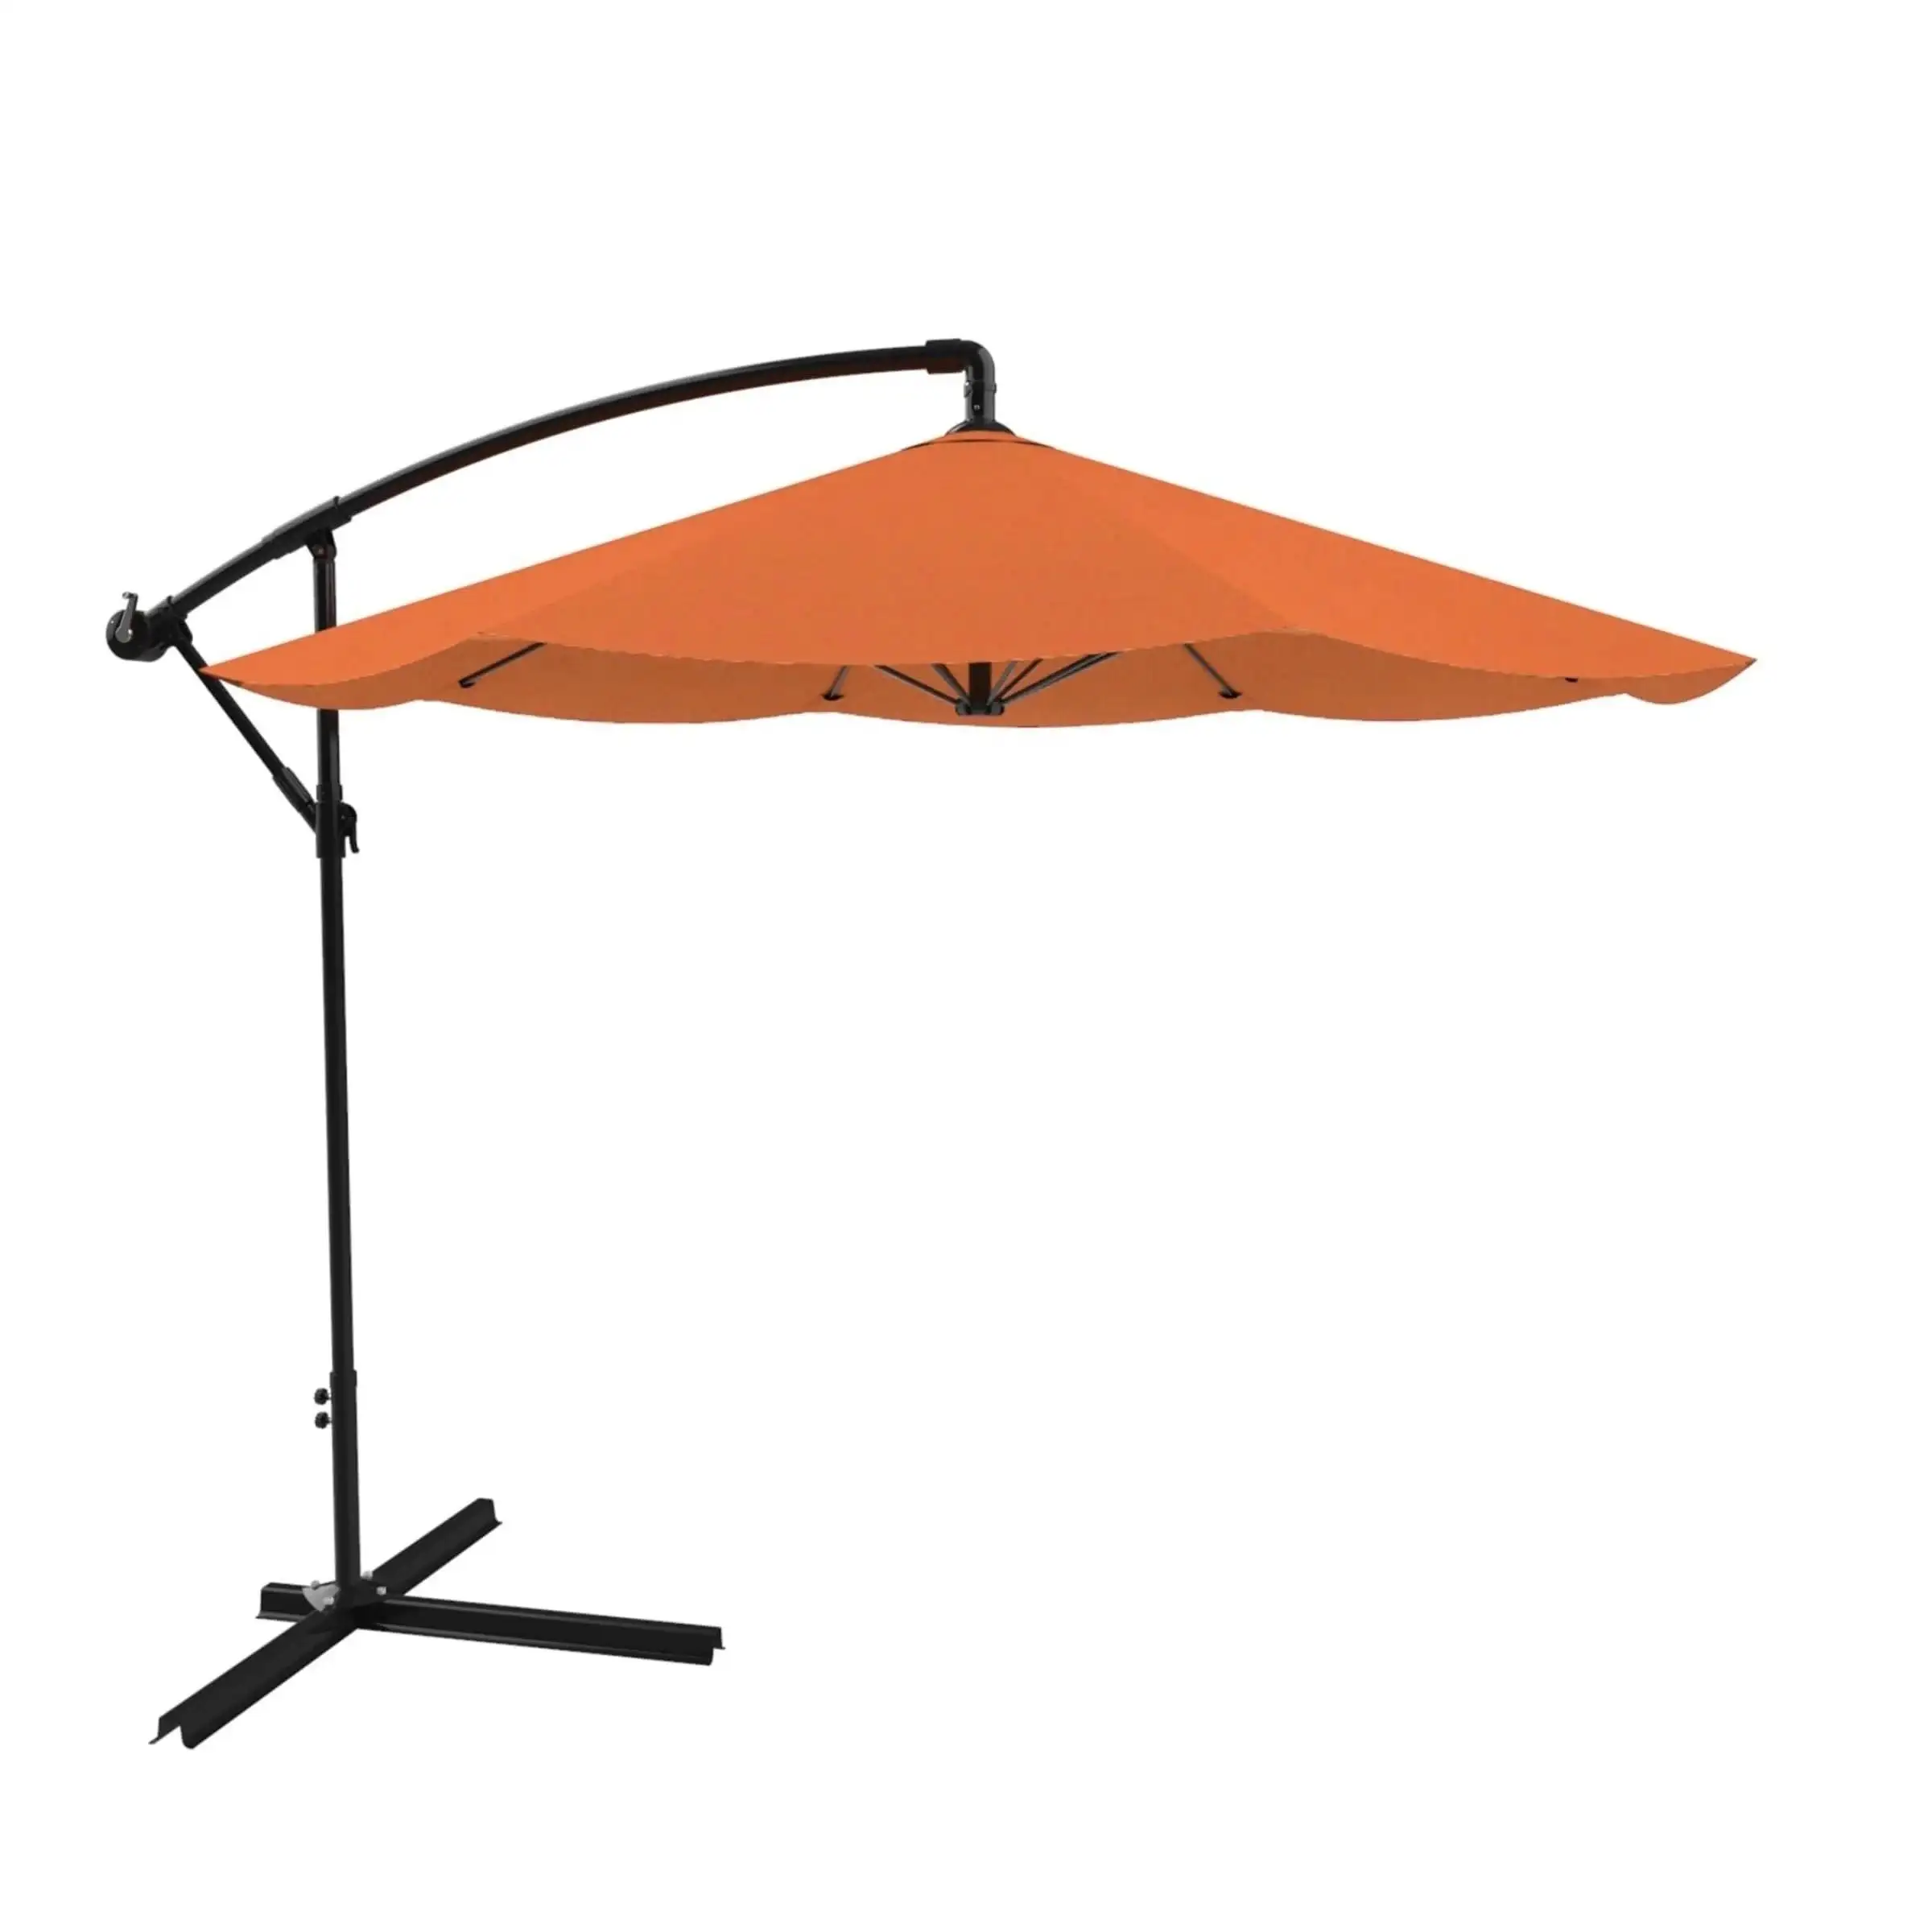 Eccellenti componenti per aste per ombrellone da esterno da palestra in stile moderno ombrello da esterno molto grande